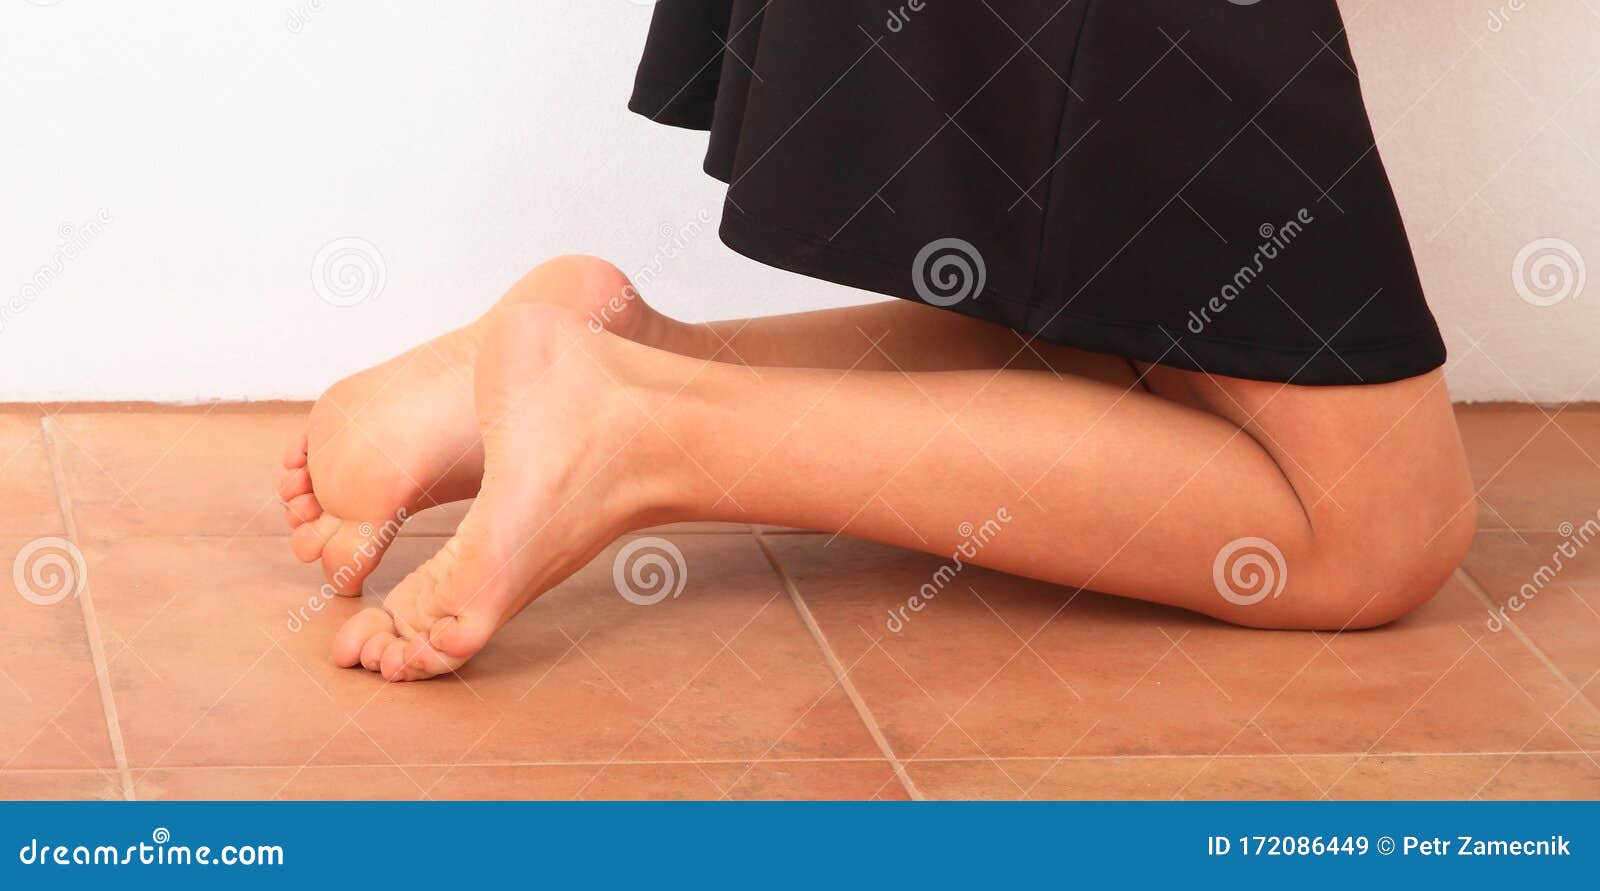 ann matthews recommends black women bare feet pic